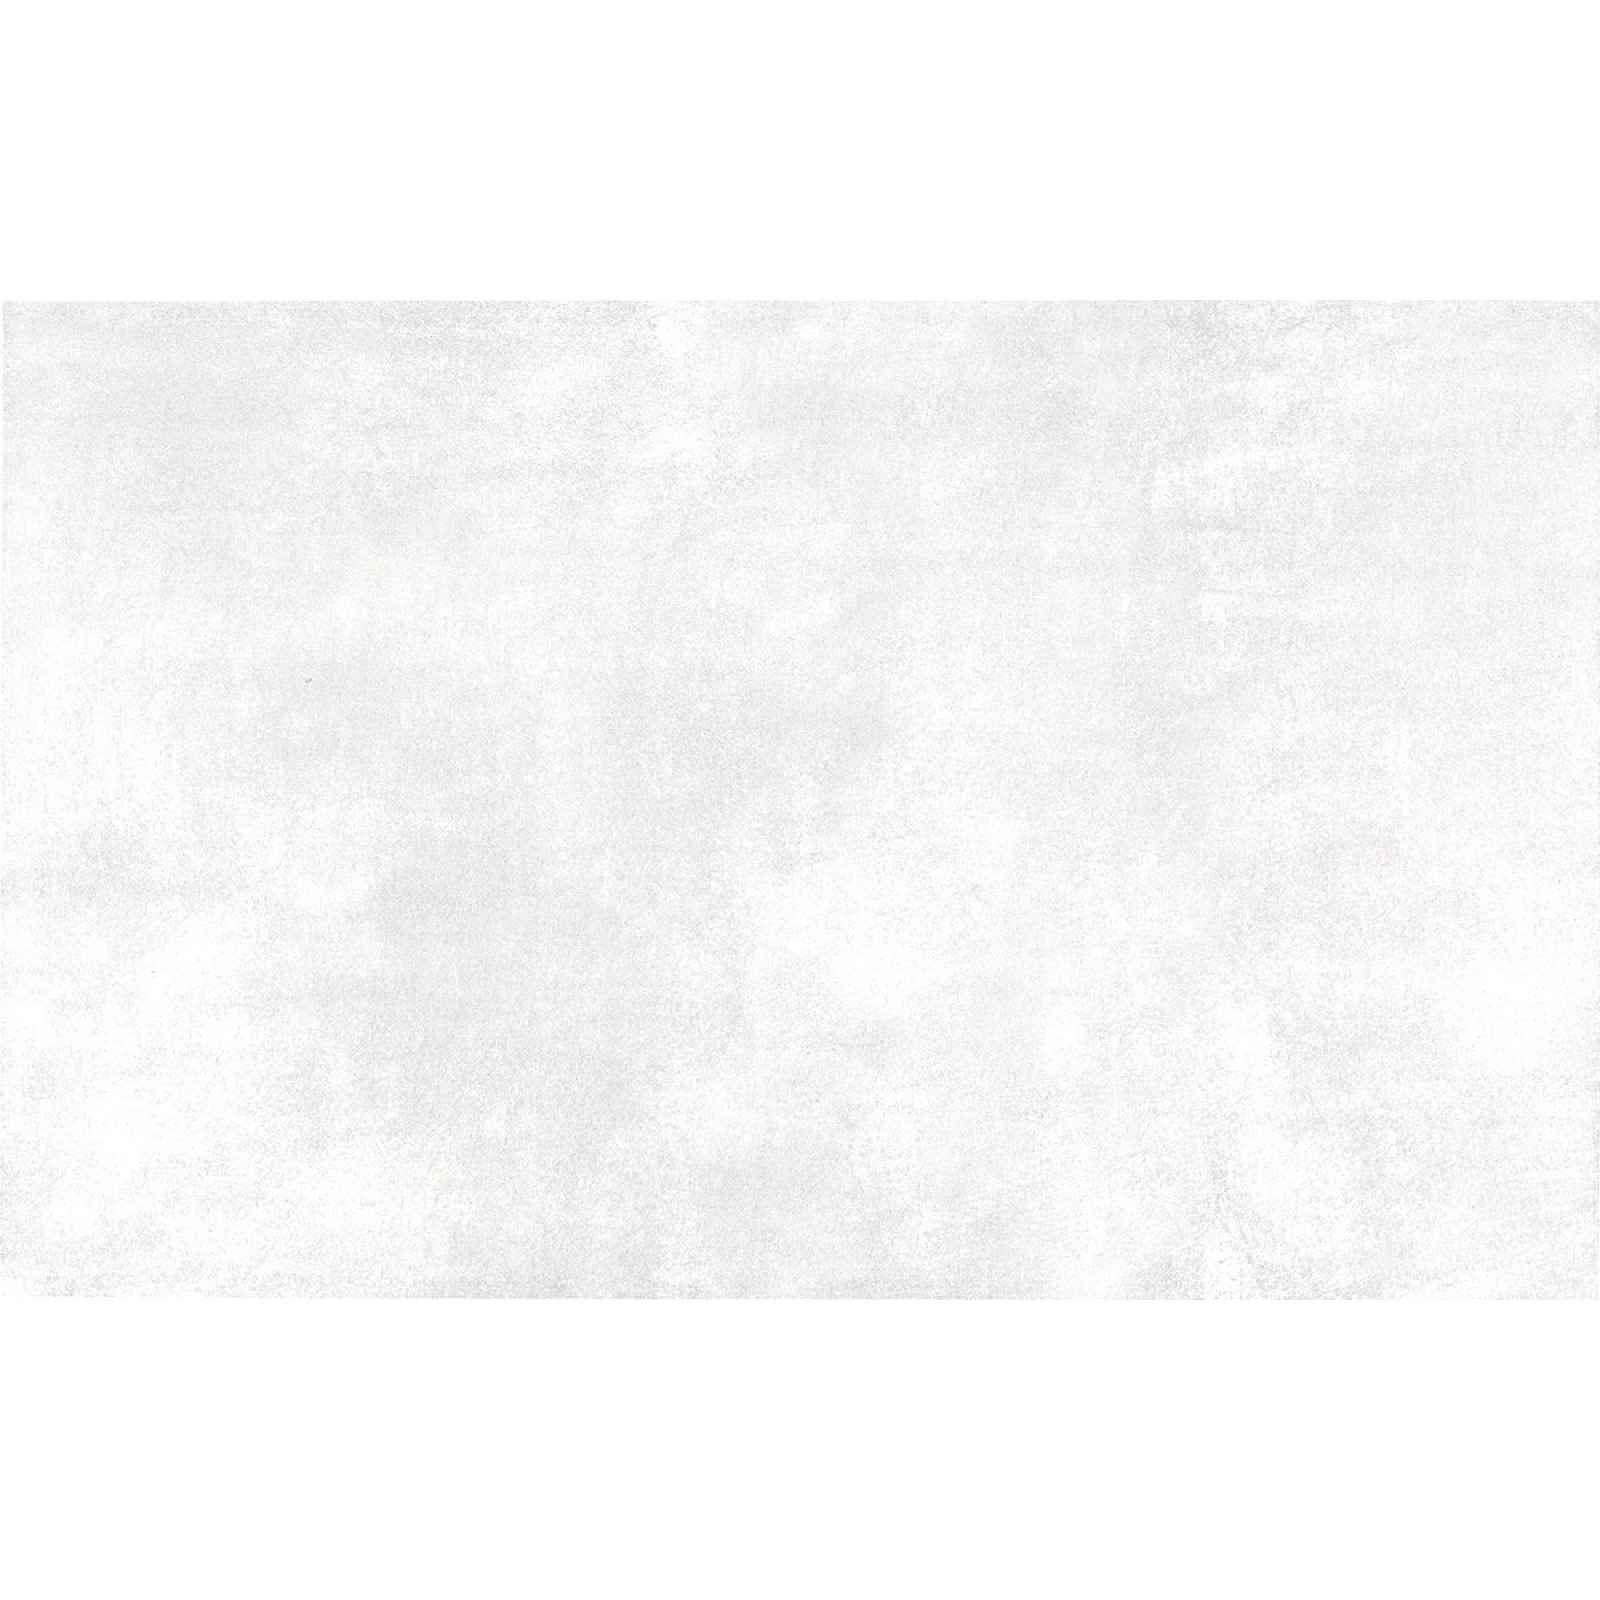 Obklad Ege Passion white 25x40 cm mat PSN01